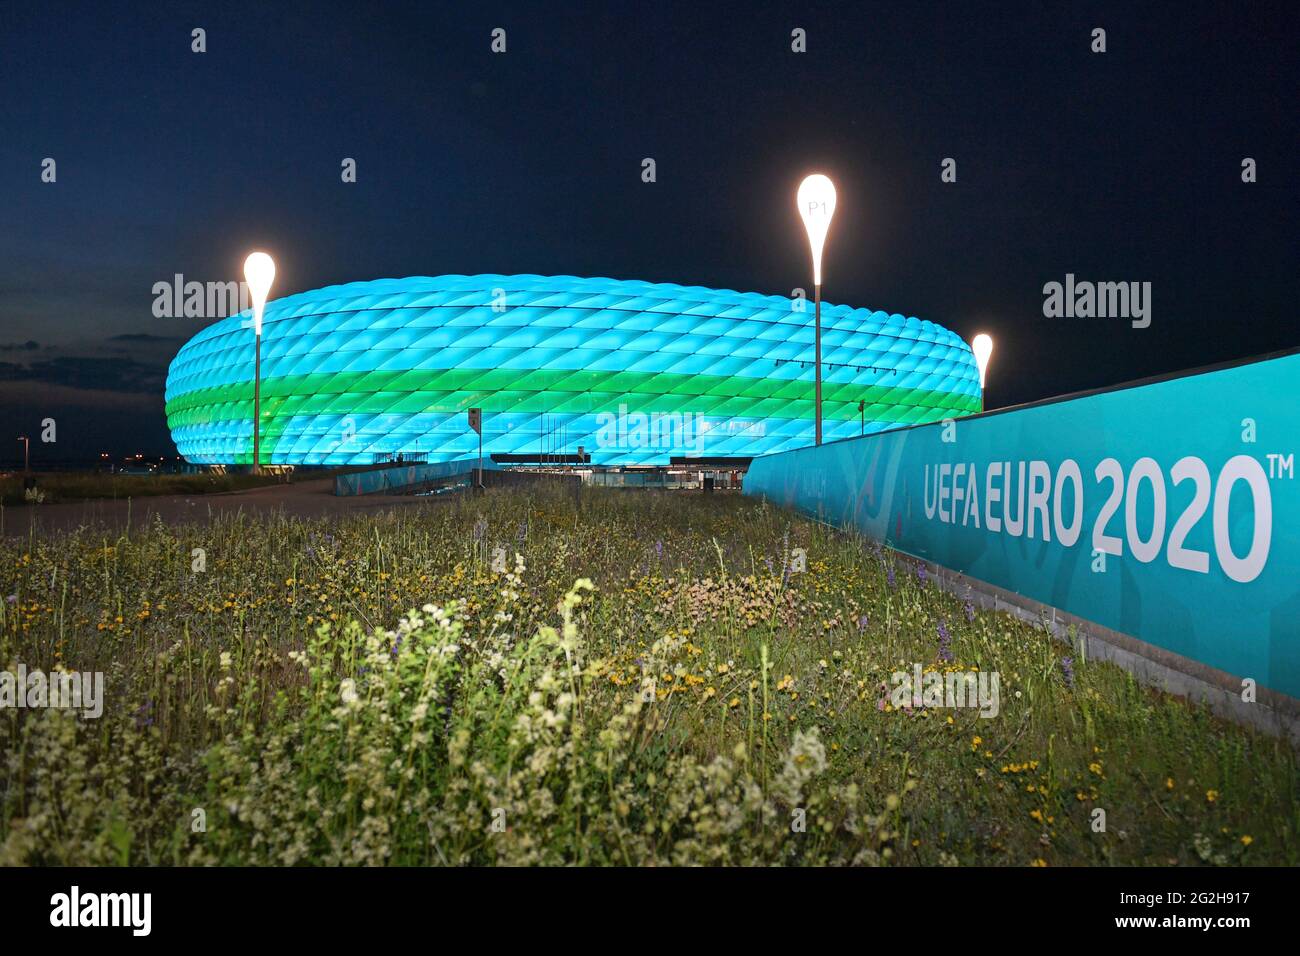 Football EURO 2020/Fußball Arena Muenchen (Allianz Arena) se ilumina con iluminación especial, descripción general, toma posterior, estadio, descripción general del estadio, el 06/11/2021. Fútbol EM 2020 del 06/11/2021 al 07/11/2021. Foto de stock